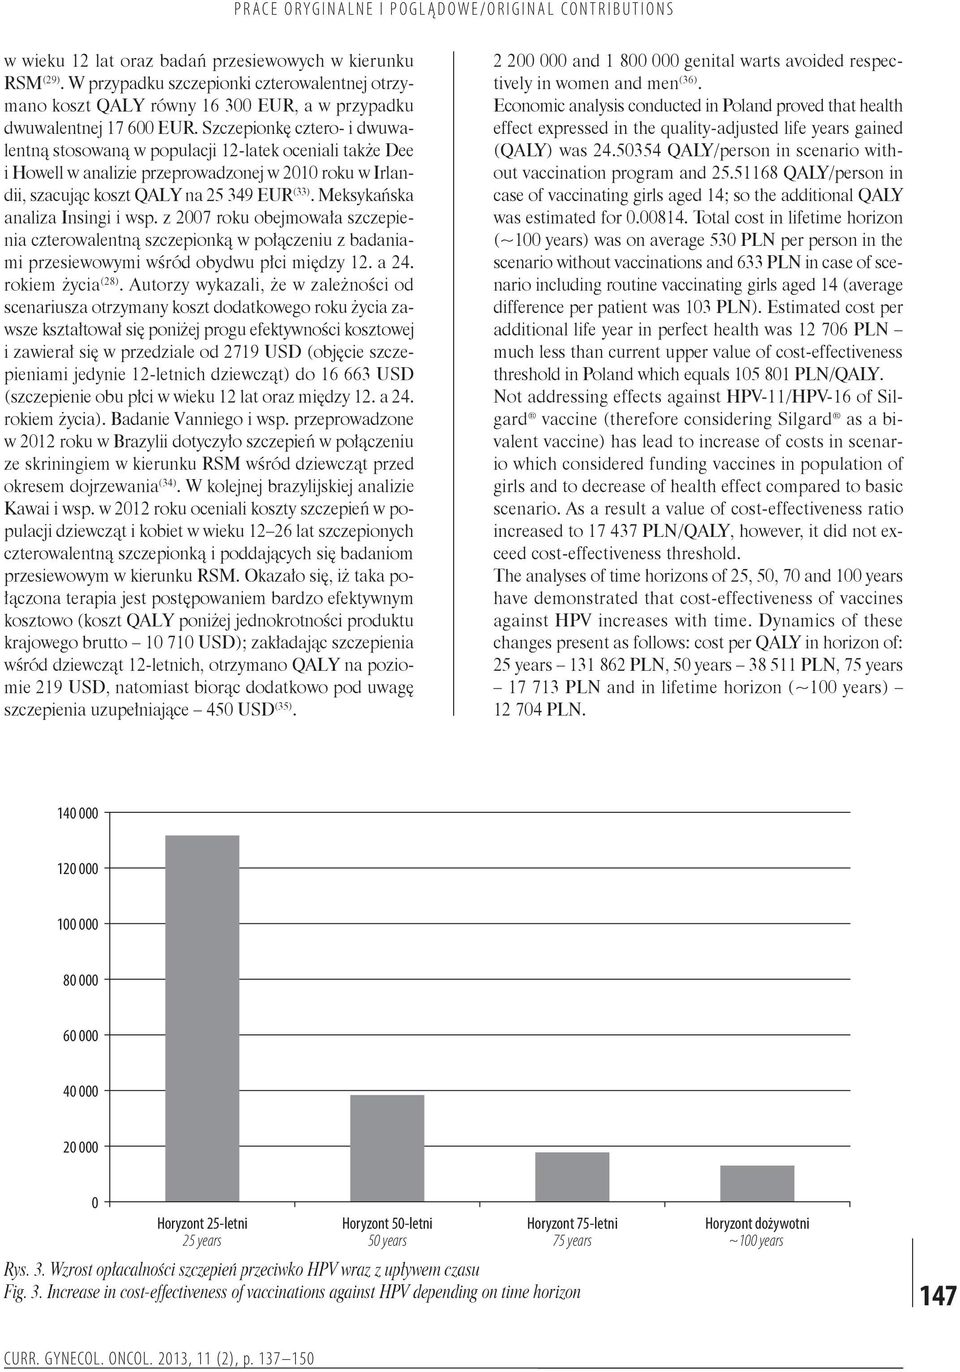 Meksykańska analiza Insingi i wsp. z 2007 roku obejmowała szczepienia czterowalentną szczepionką w połączeniu z badaniami przesiewowymi wśród obydwu płci między 12. a 24. rokiem życia (28).